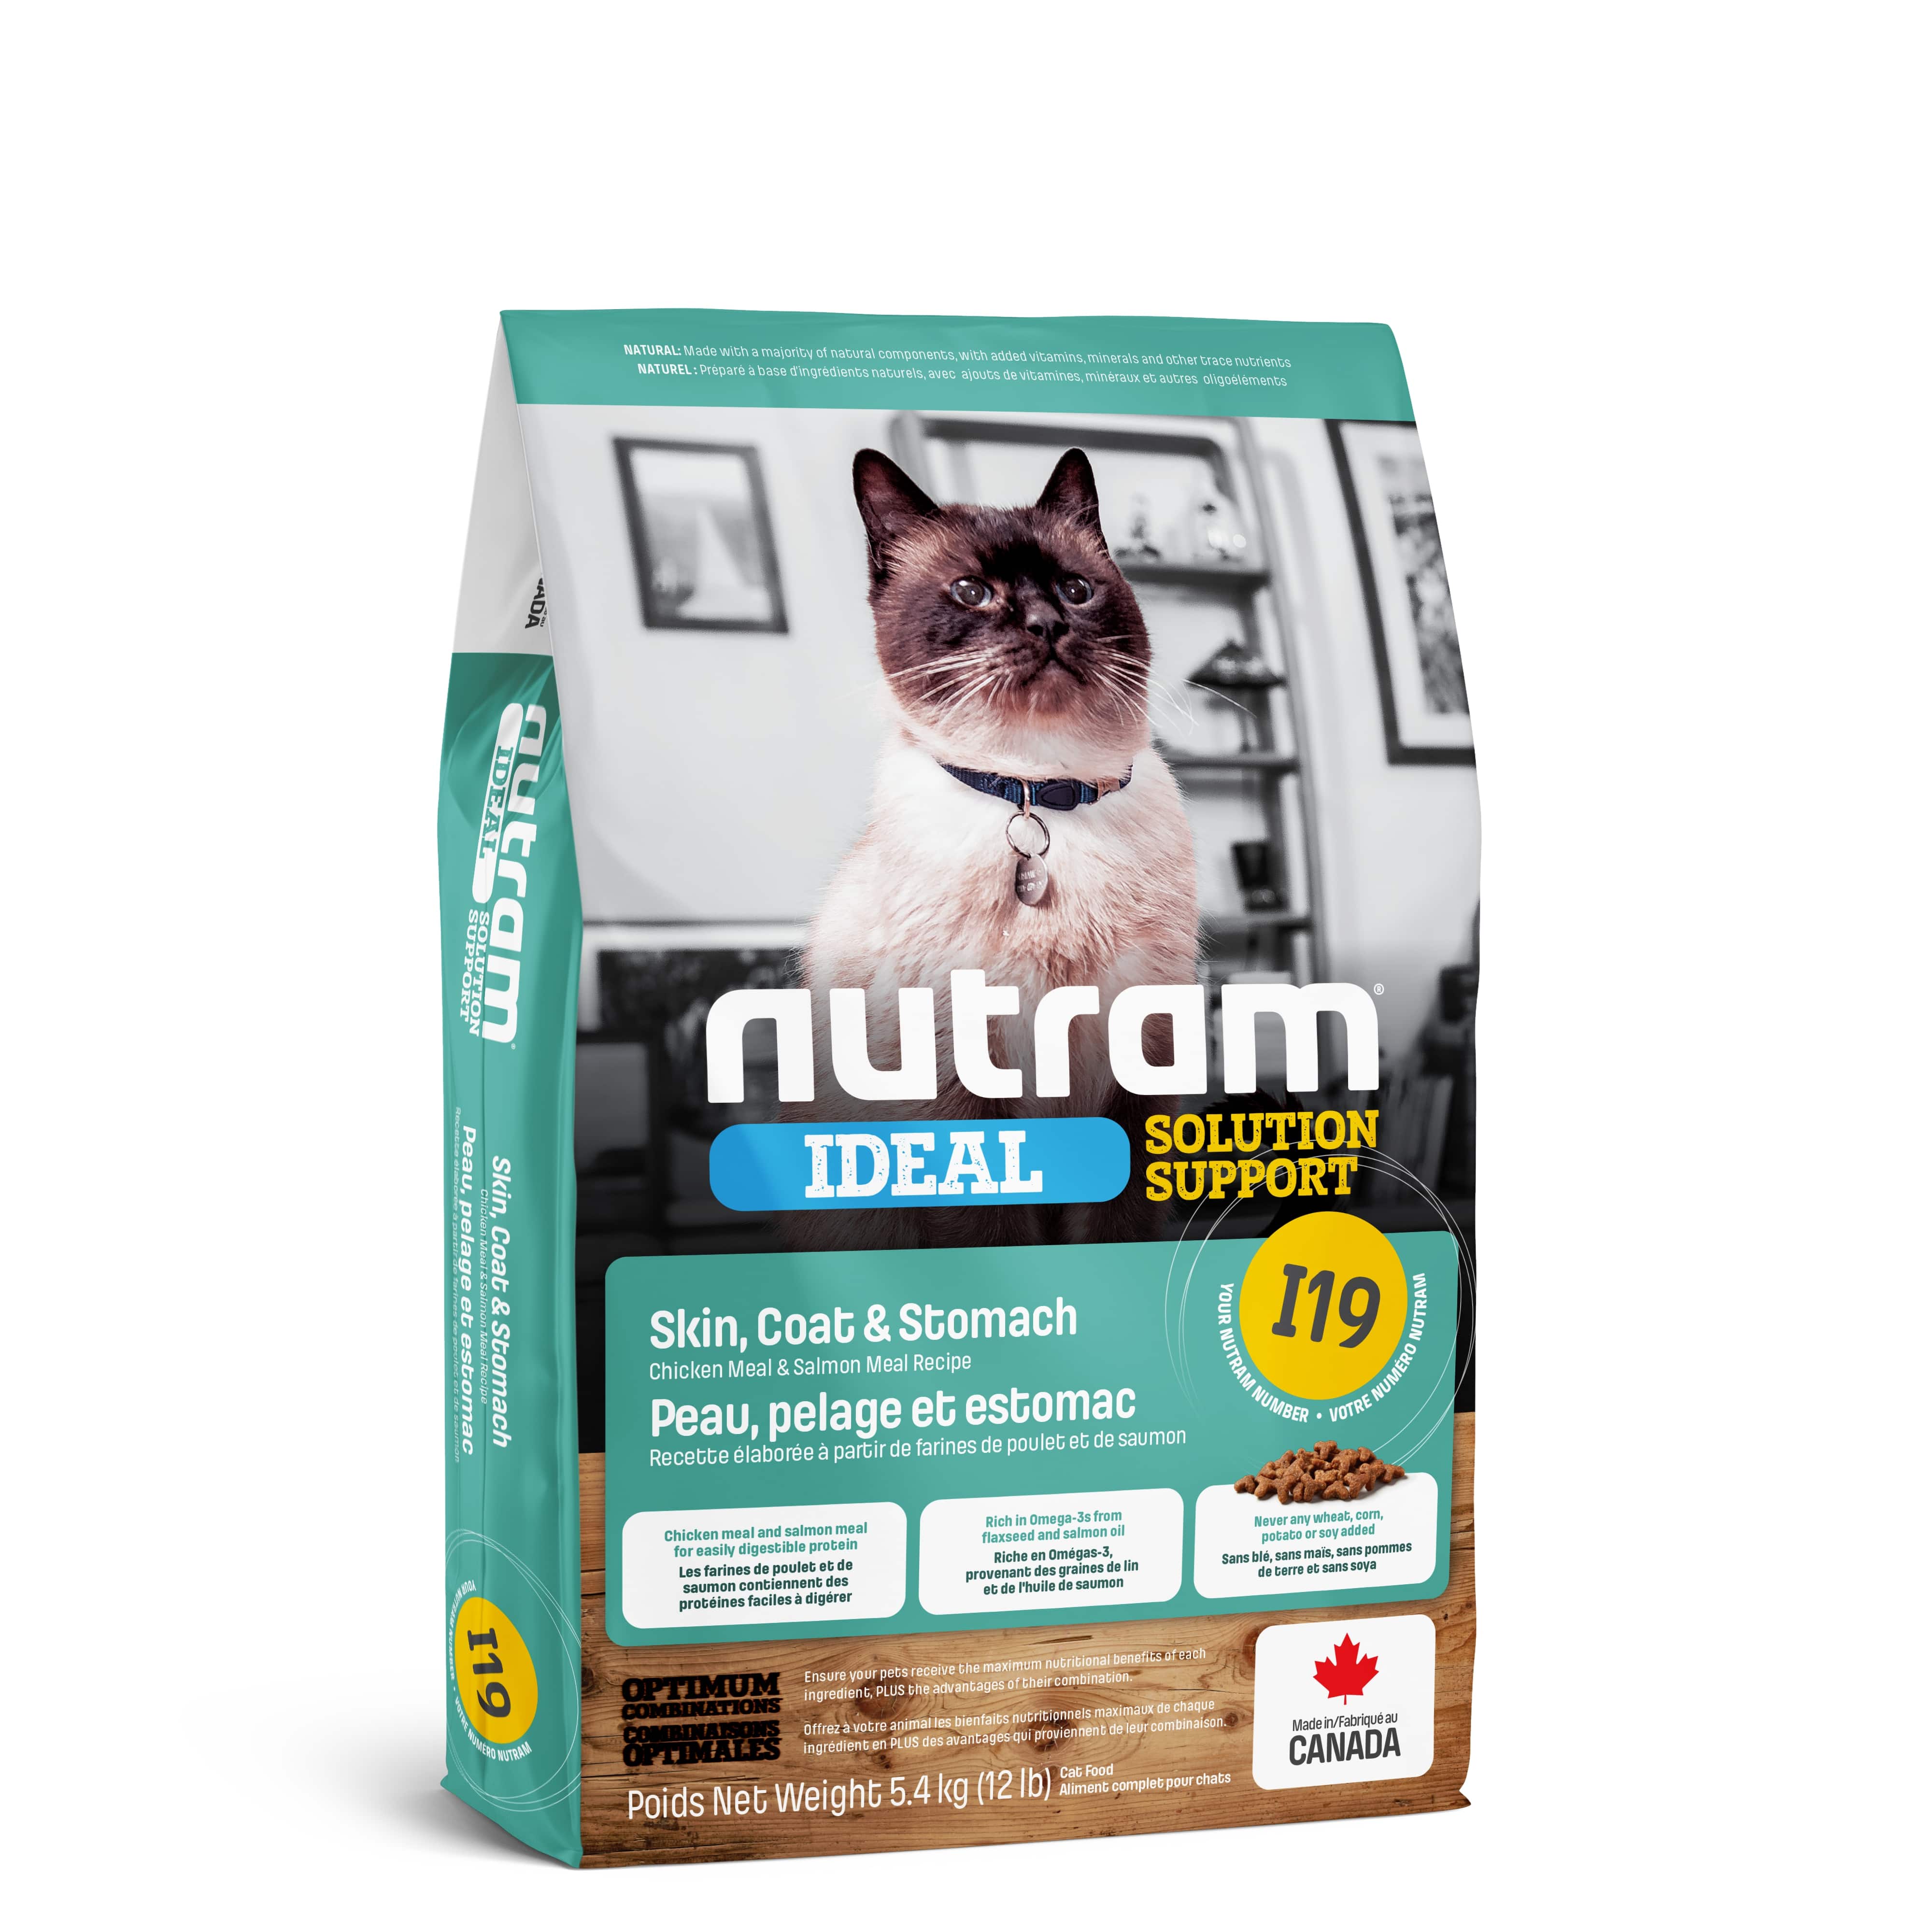 I19 Nutram Ideal Solution Support® Sensetive Coat, Skin, Stomach Cat Food